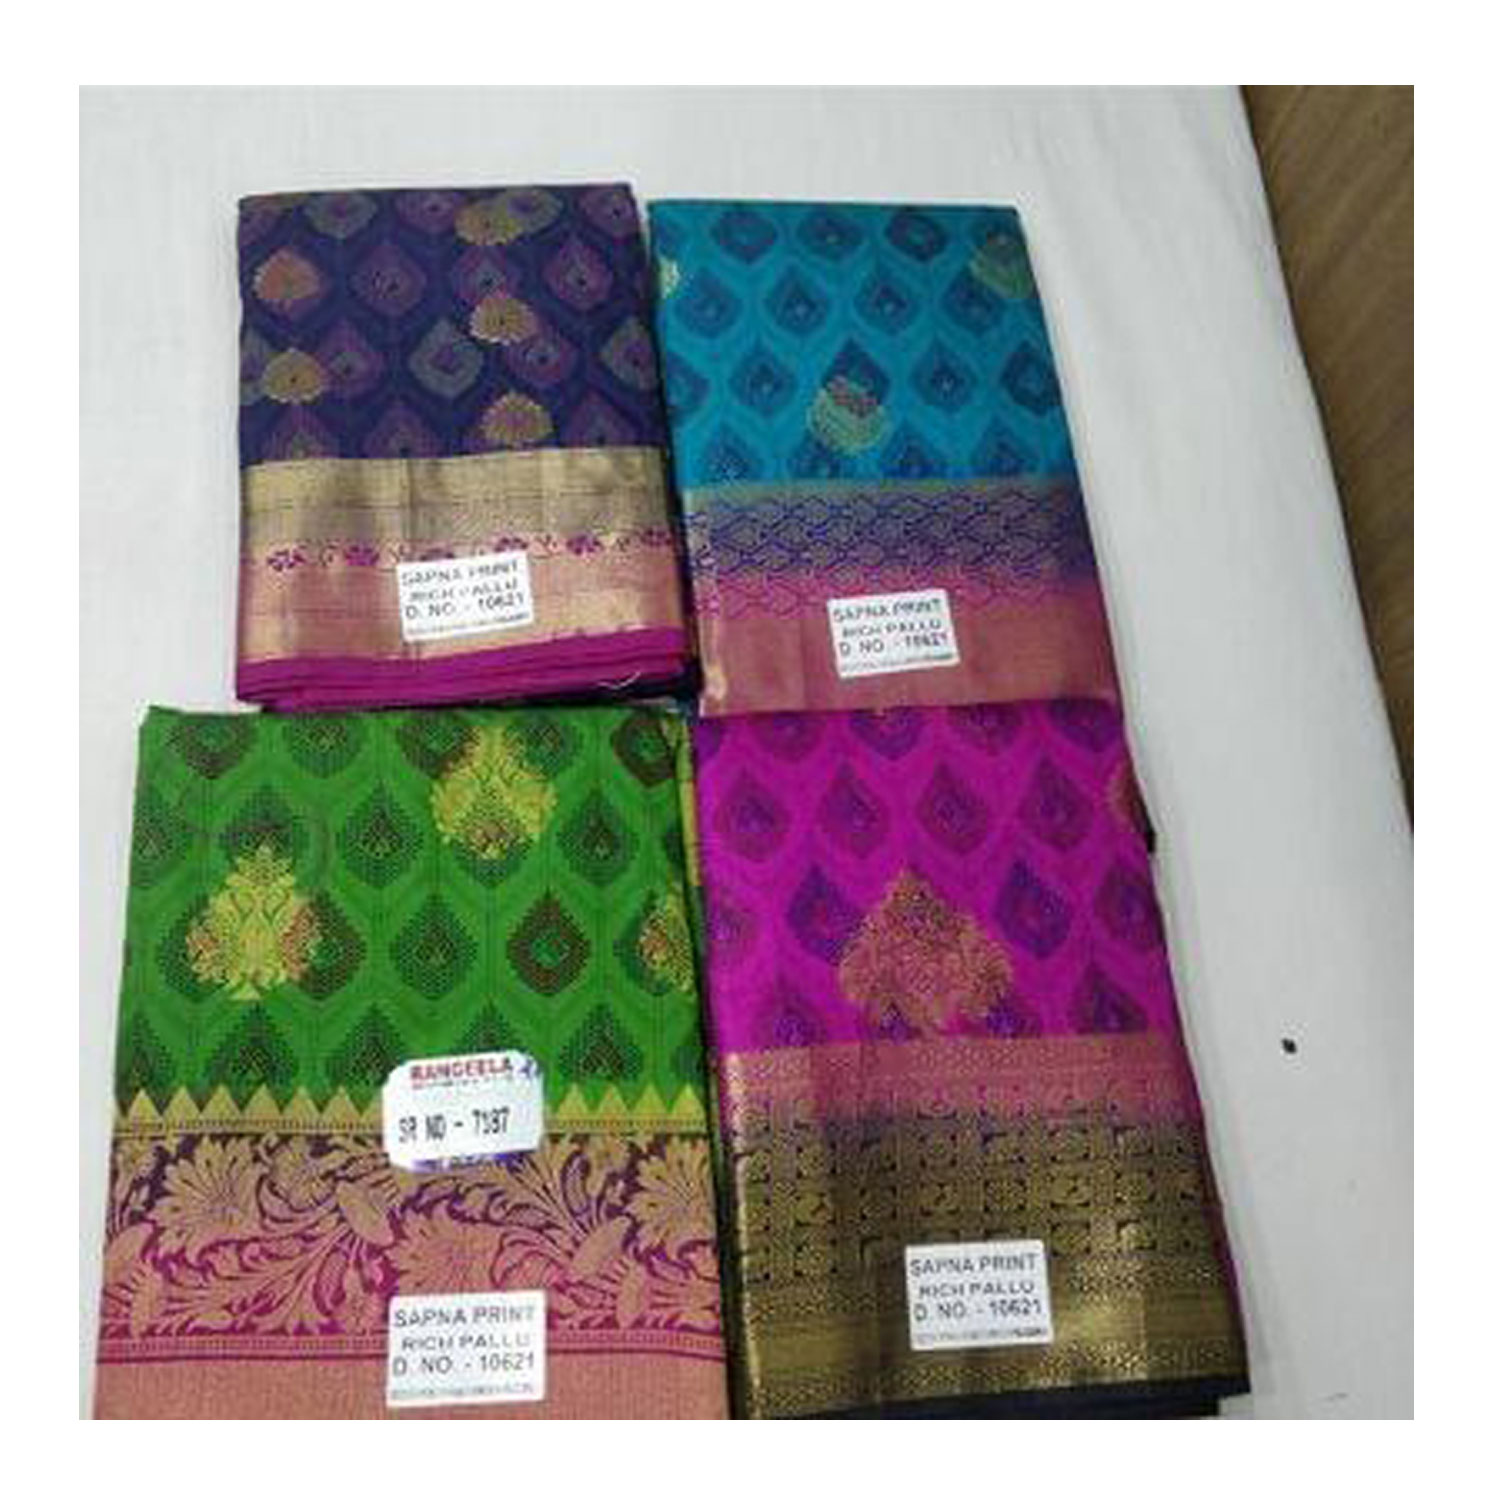  Women's Silk Cotton Weaving Work Sapna Print Saree |D.NO - W-7187| Pack of 4